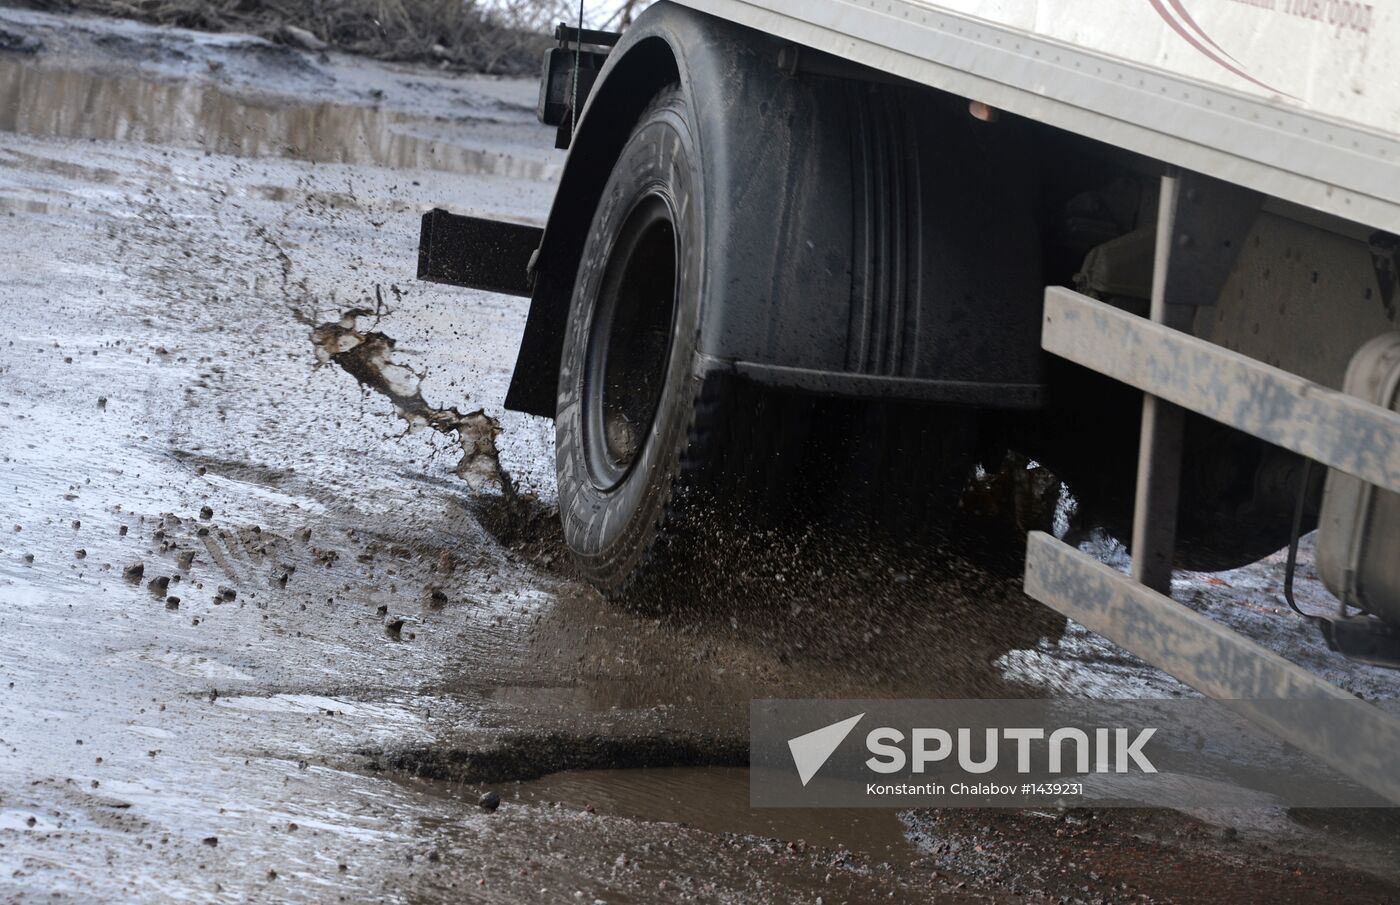 Broken roads in Veliky Novgorod